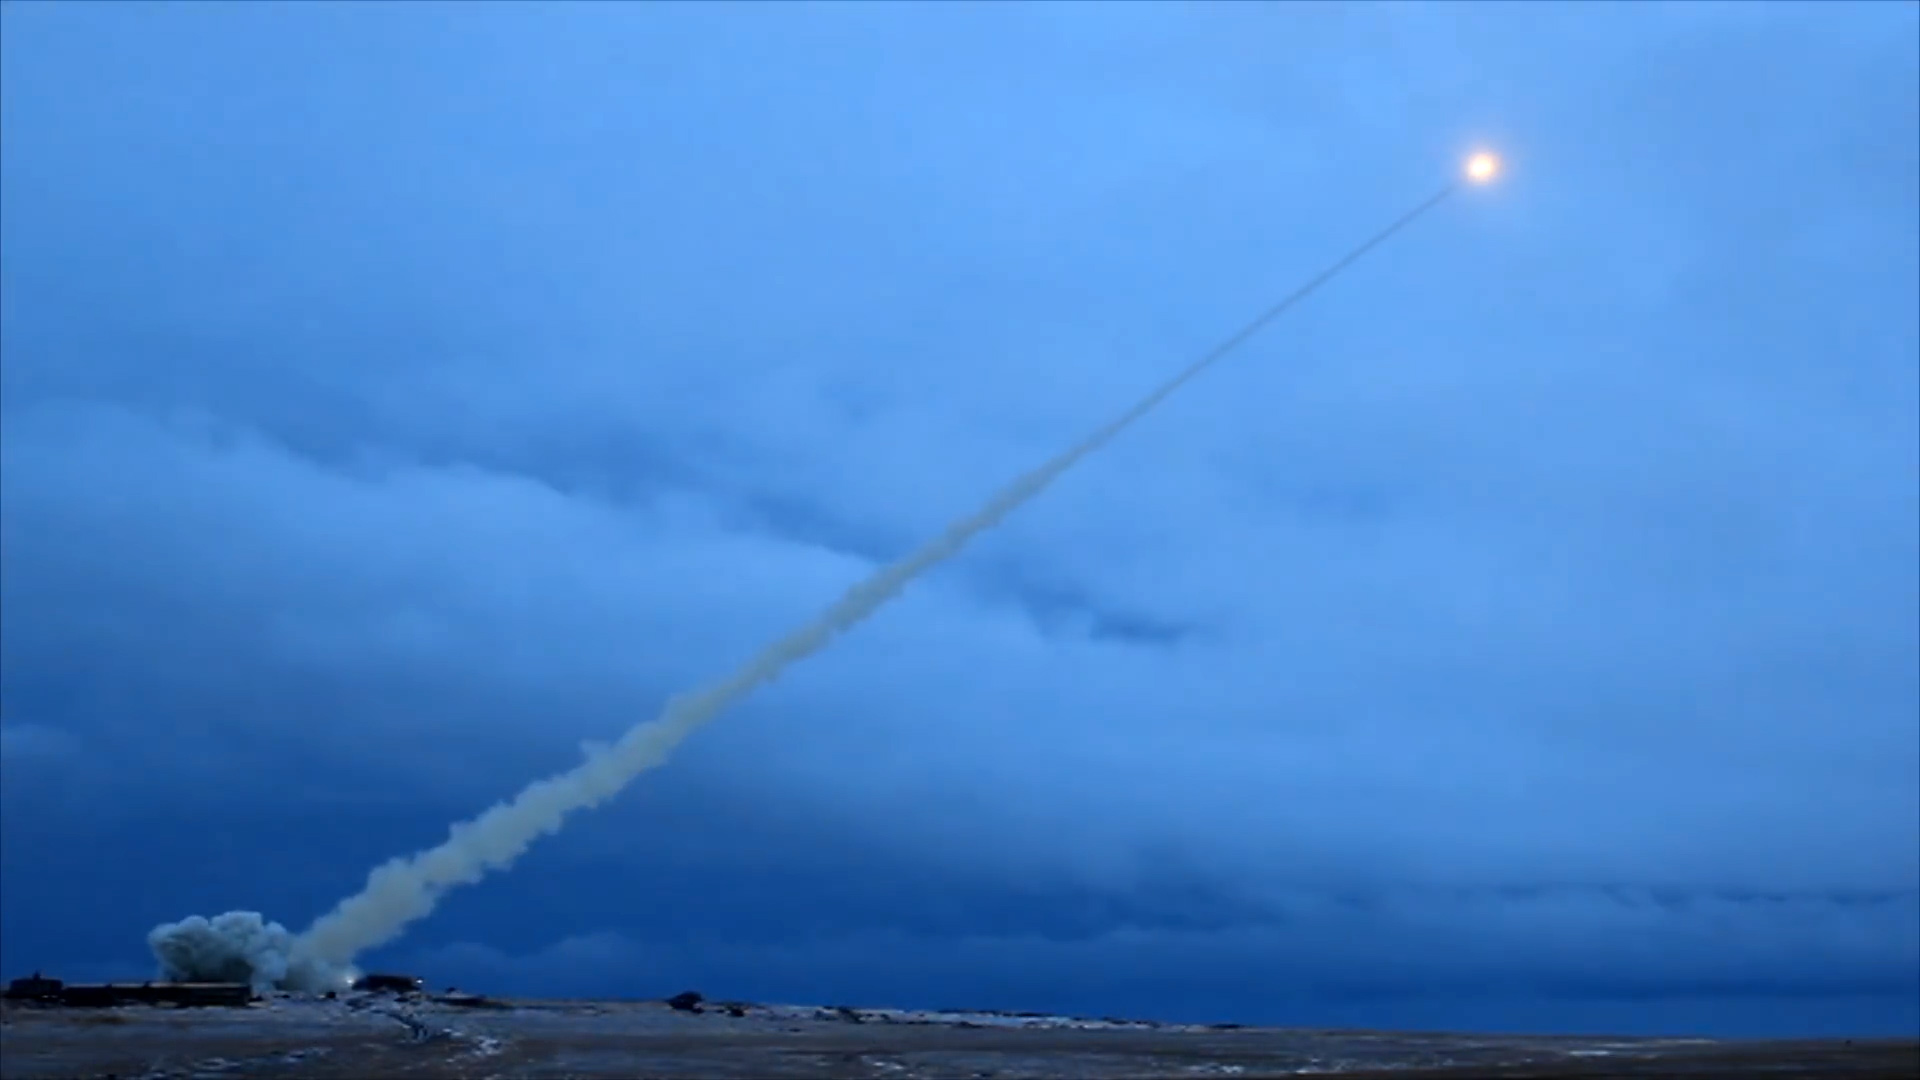 Les Russes se préparent peut-être à tester le missile de croisière intercontinental à propulsion nucléaire SSC-X9 Skyfall. Ce missile n'a jamais parcouru plus de 35 km et les 13 essais précédents ont échoué et fait 7 morts.-9